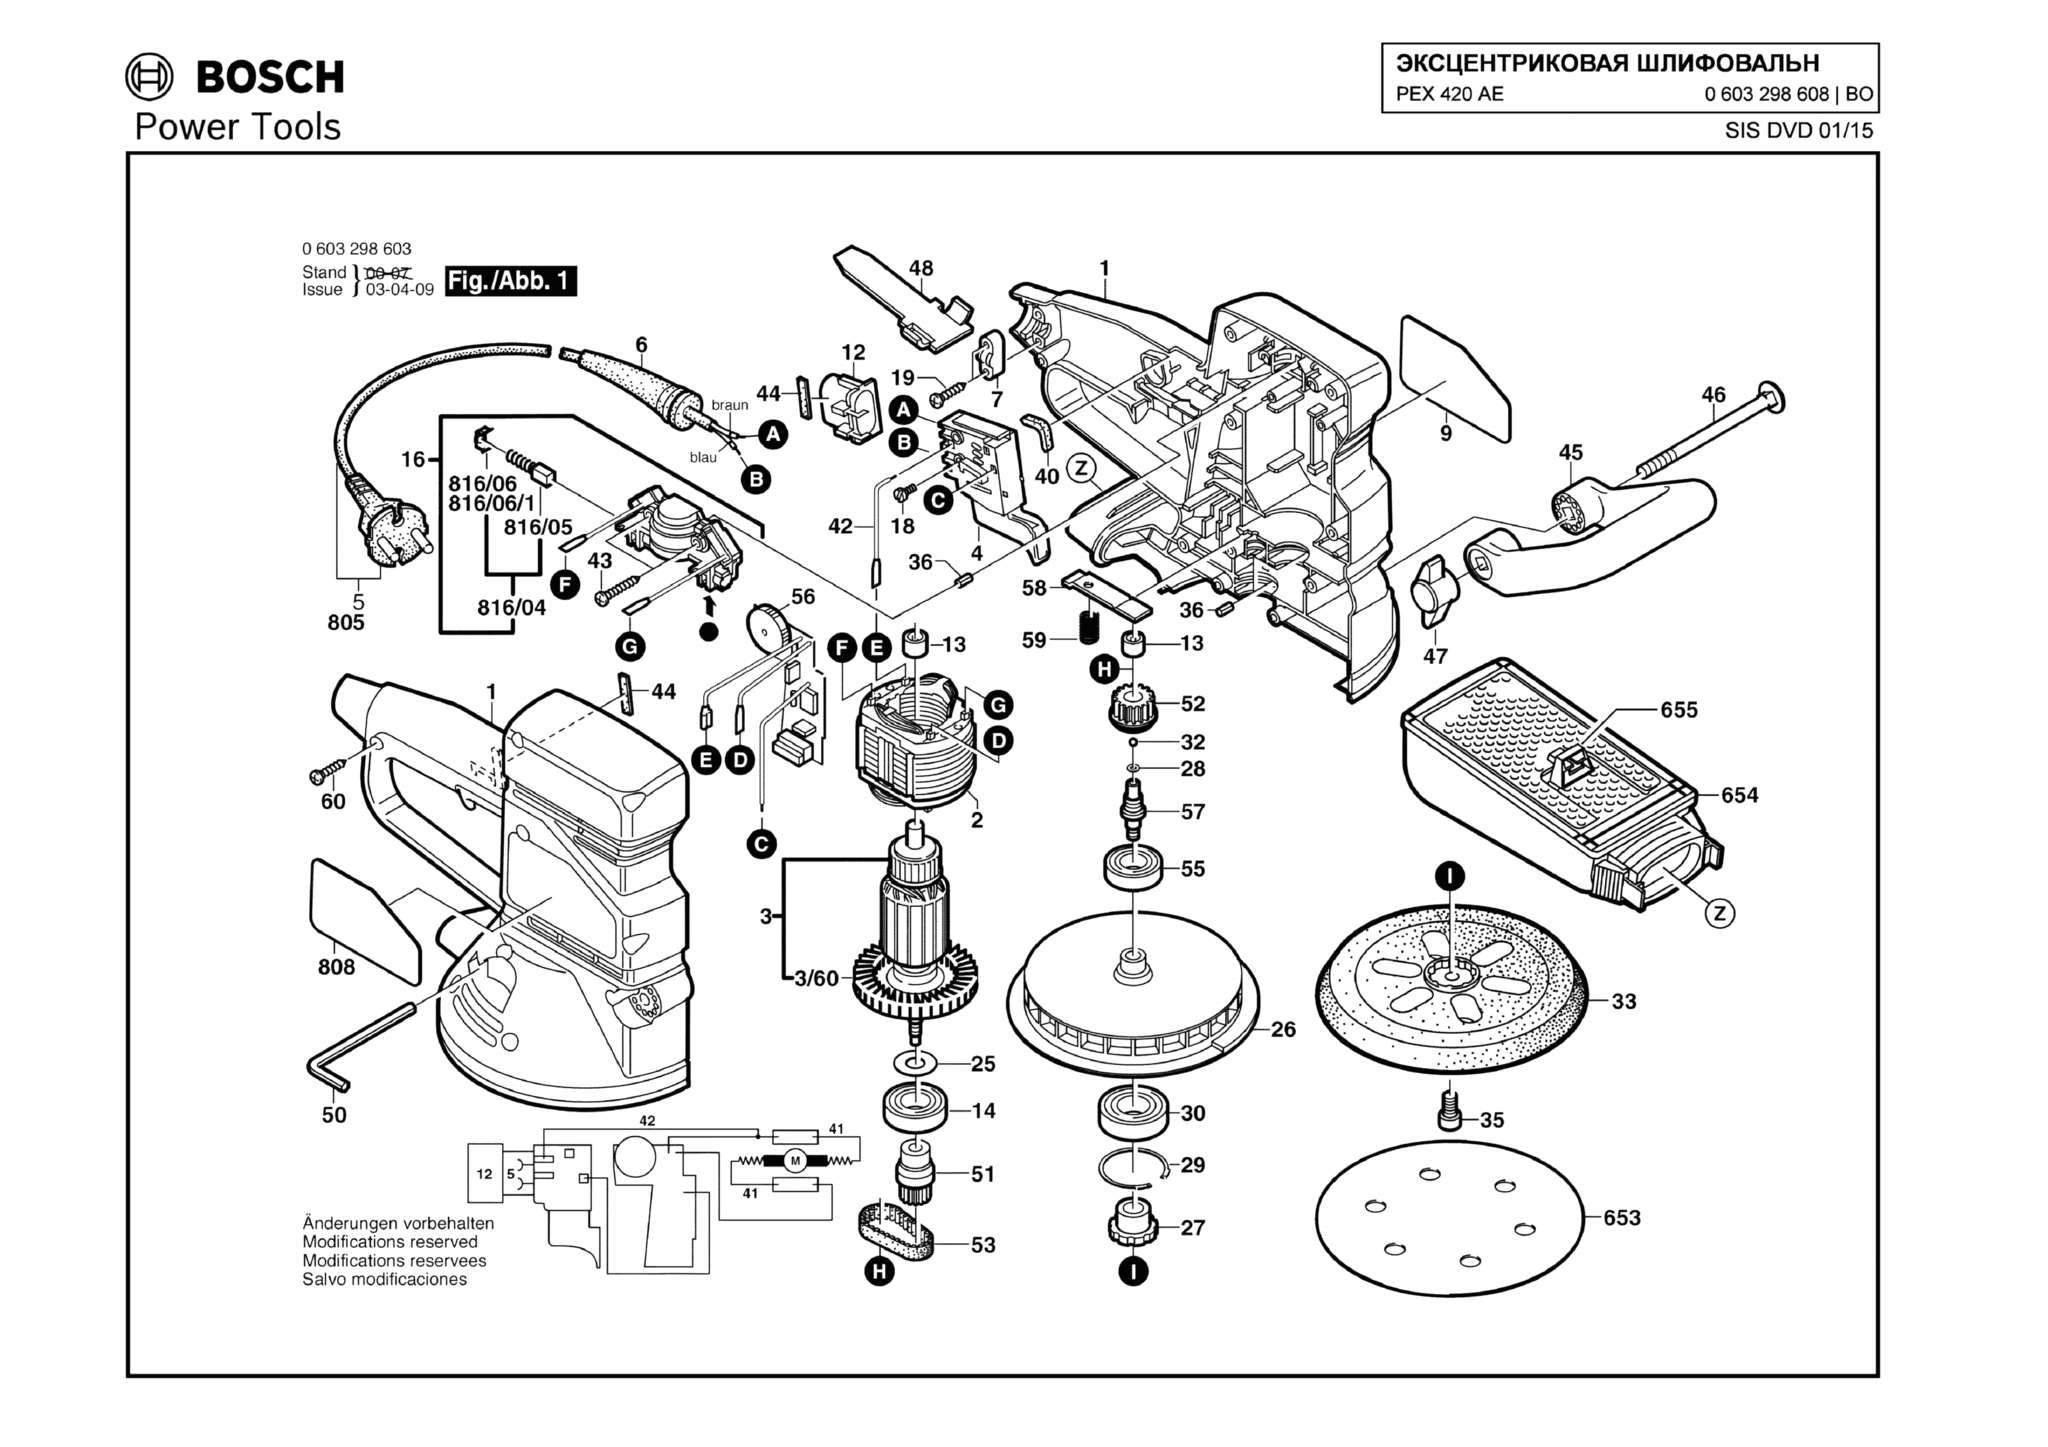 Запчасти, схема и деталировка Bosch 420 AE (ТИП 0603298608)